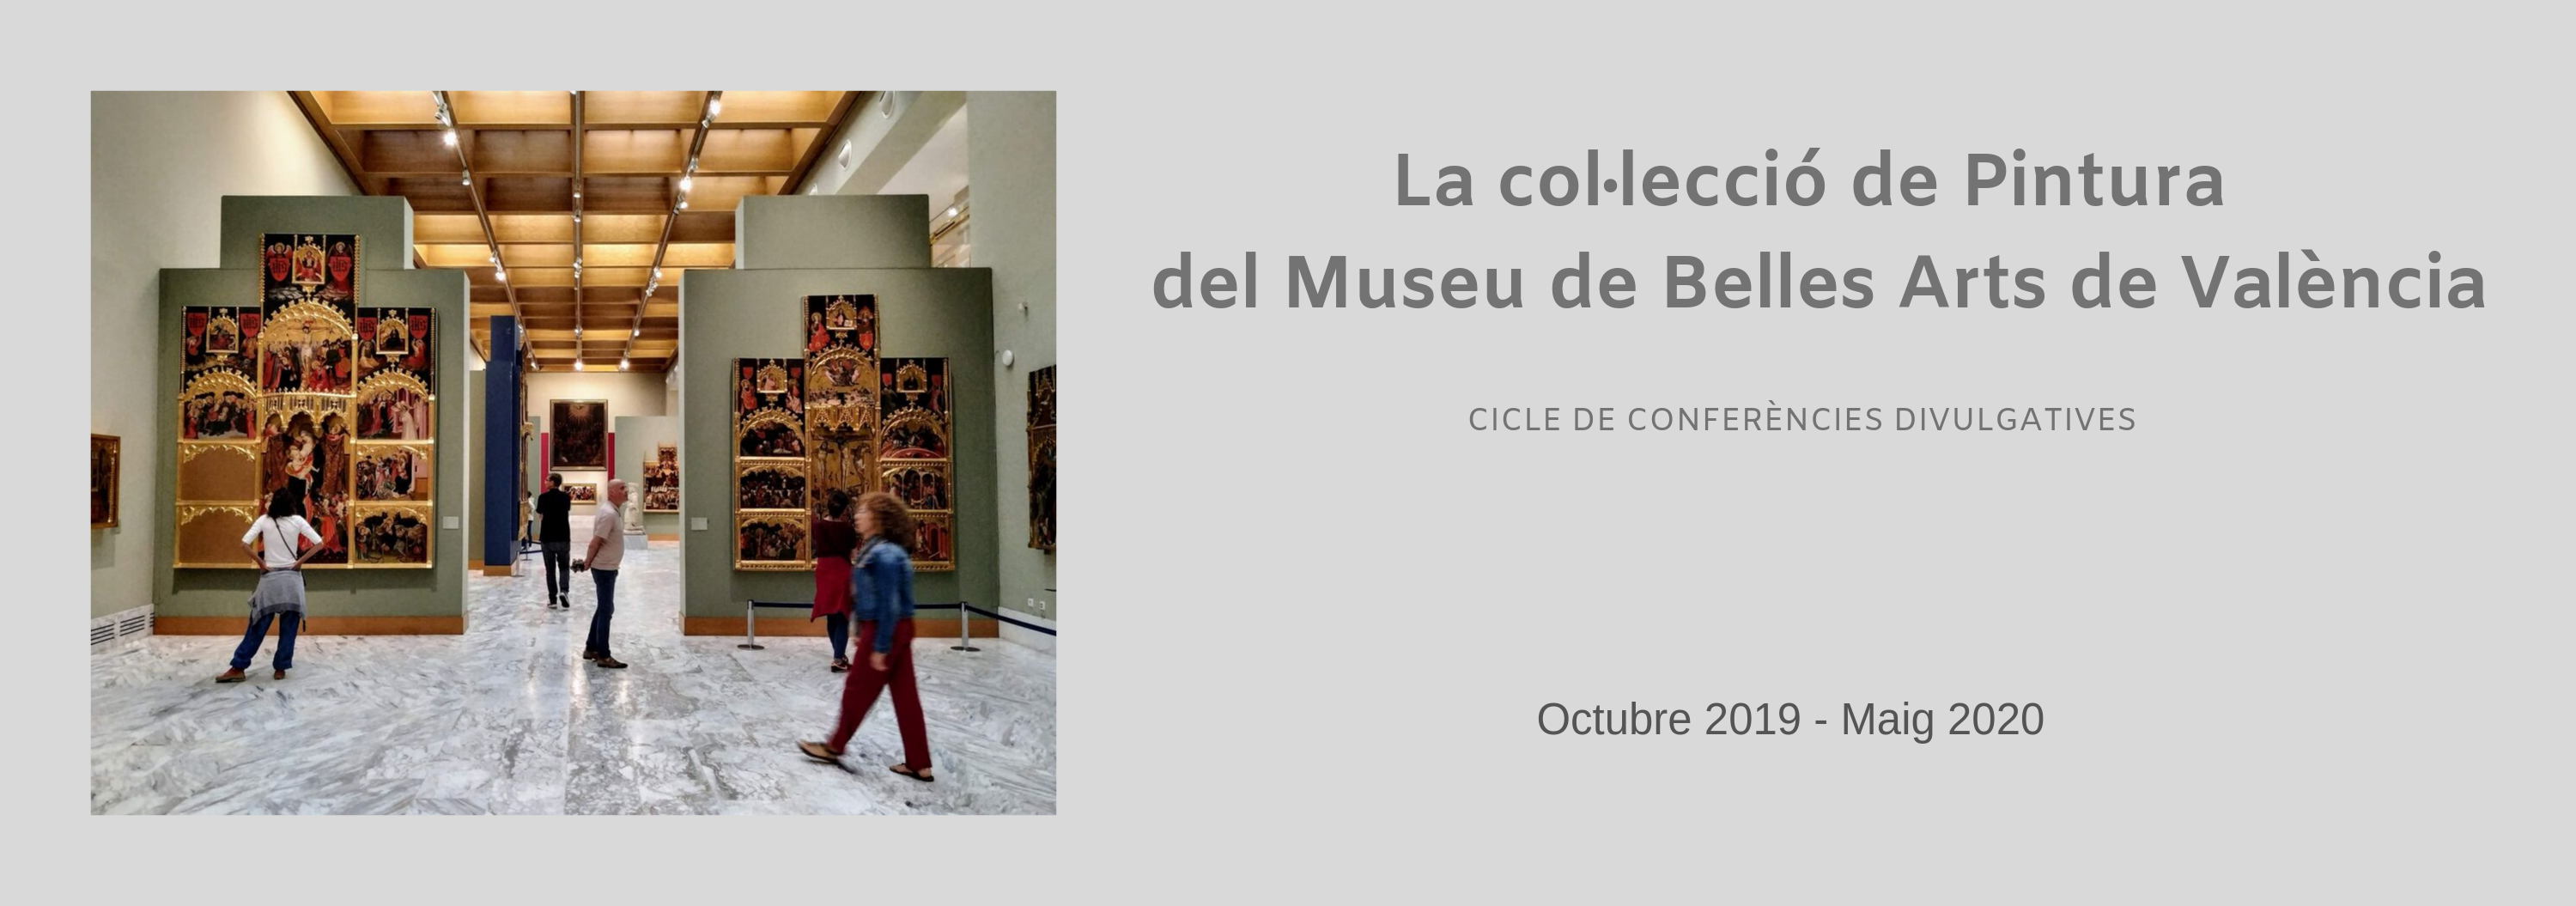 Cicle de conferències 'La col·lecció de Pintura del Museu de Belles Arts de València'